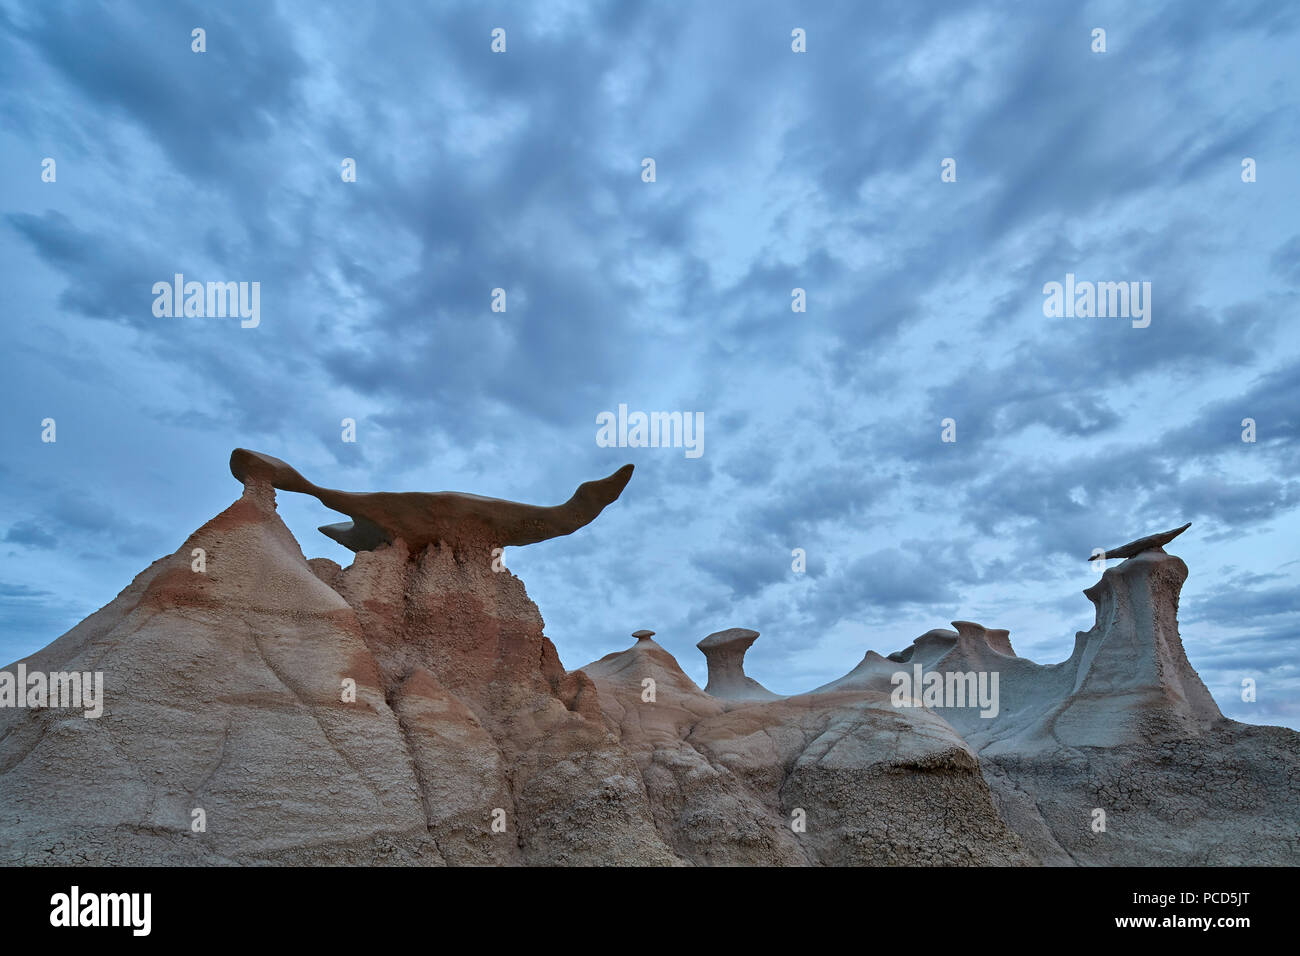 Ali di nuvole, Bisti deserto, Nuovo Messico, Stati Uniti d'America, America del Nord Foto Stock